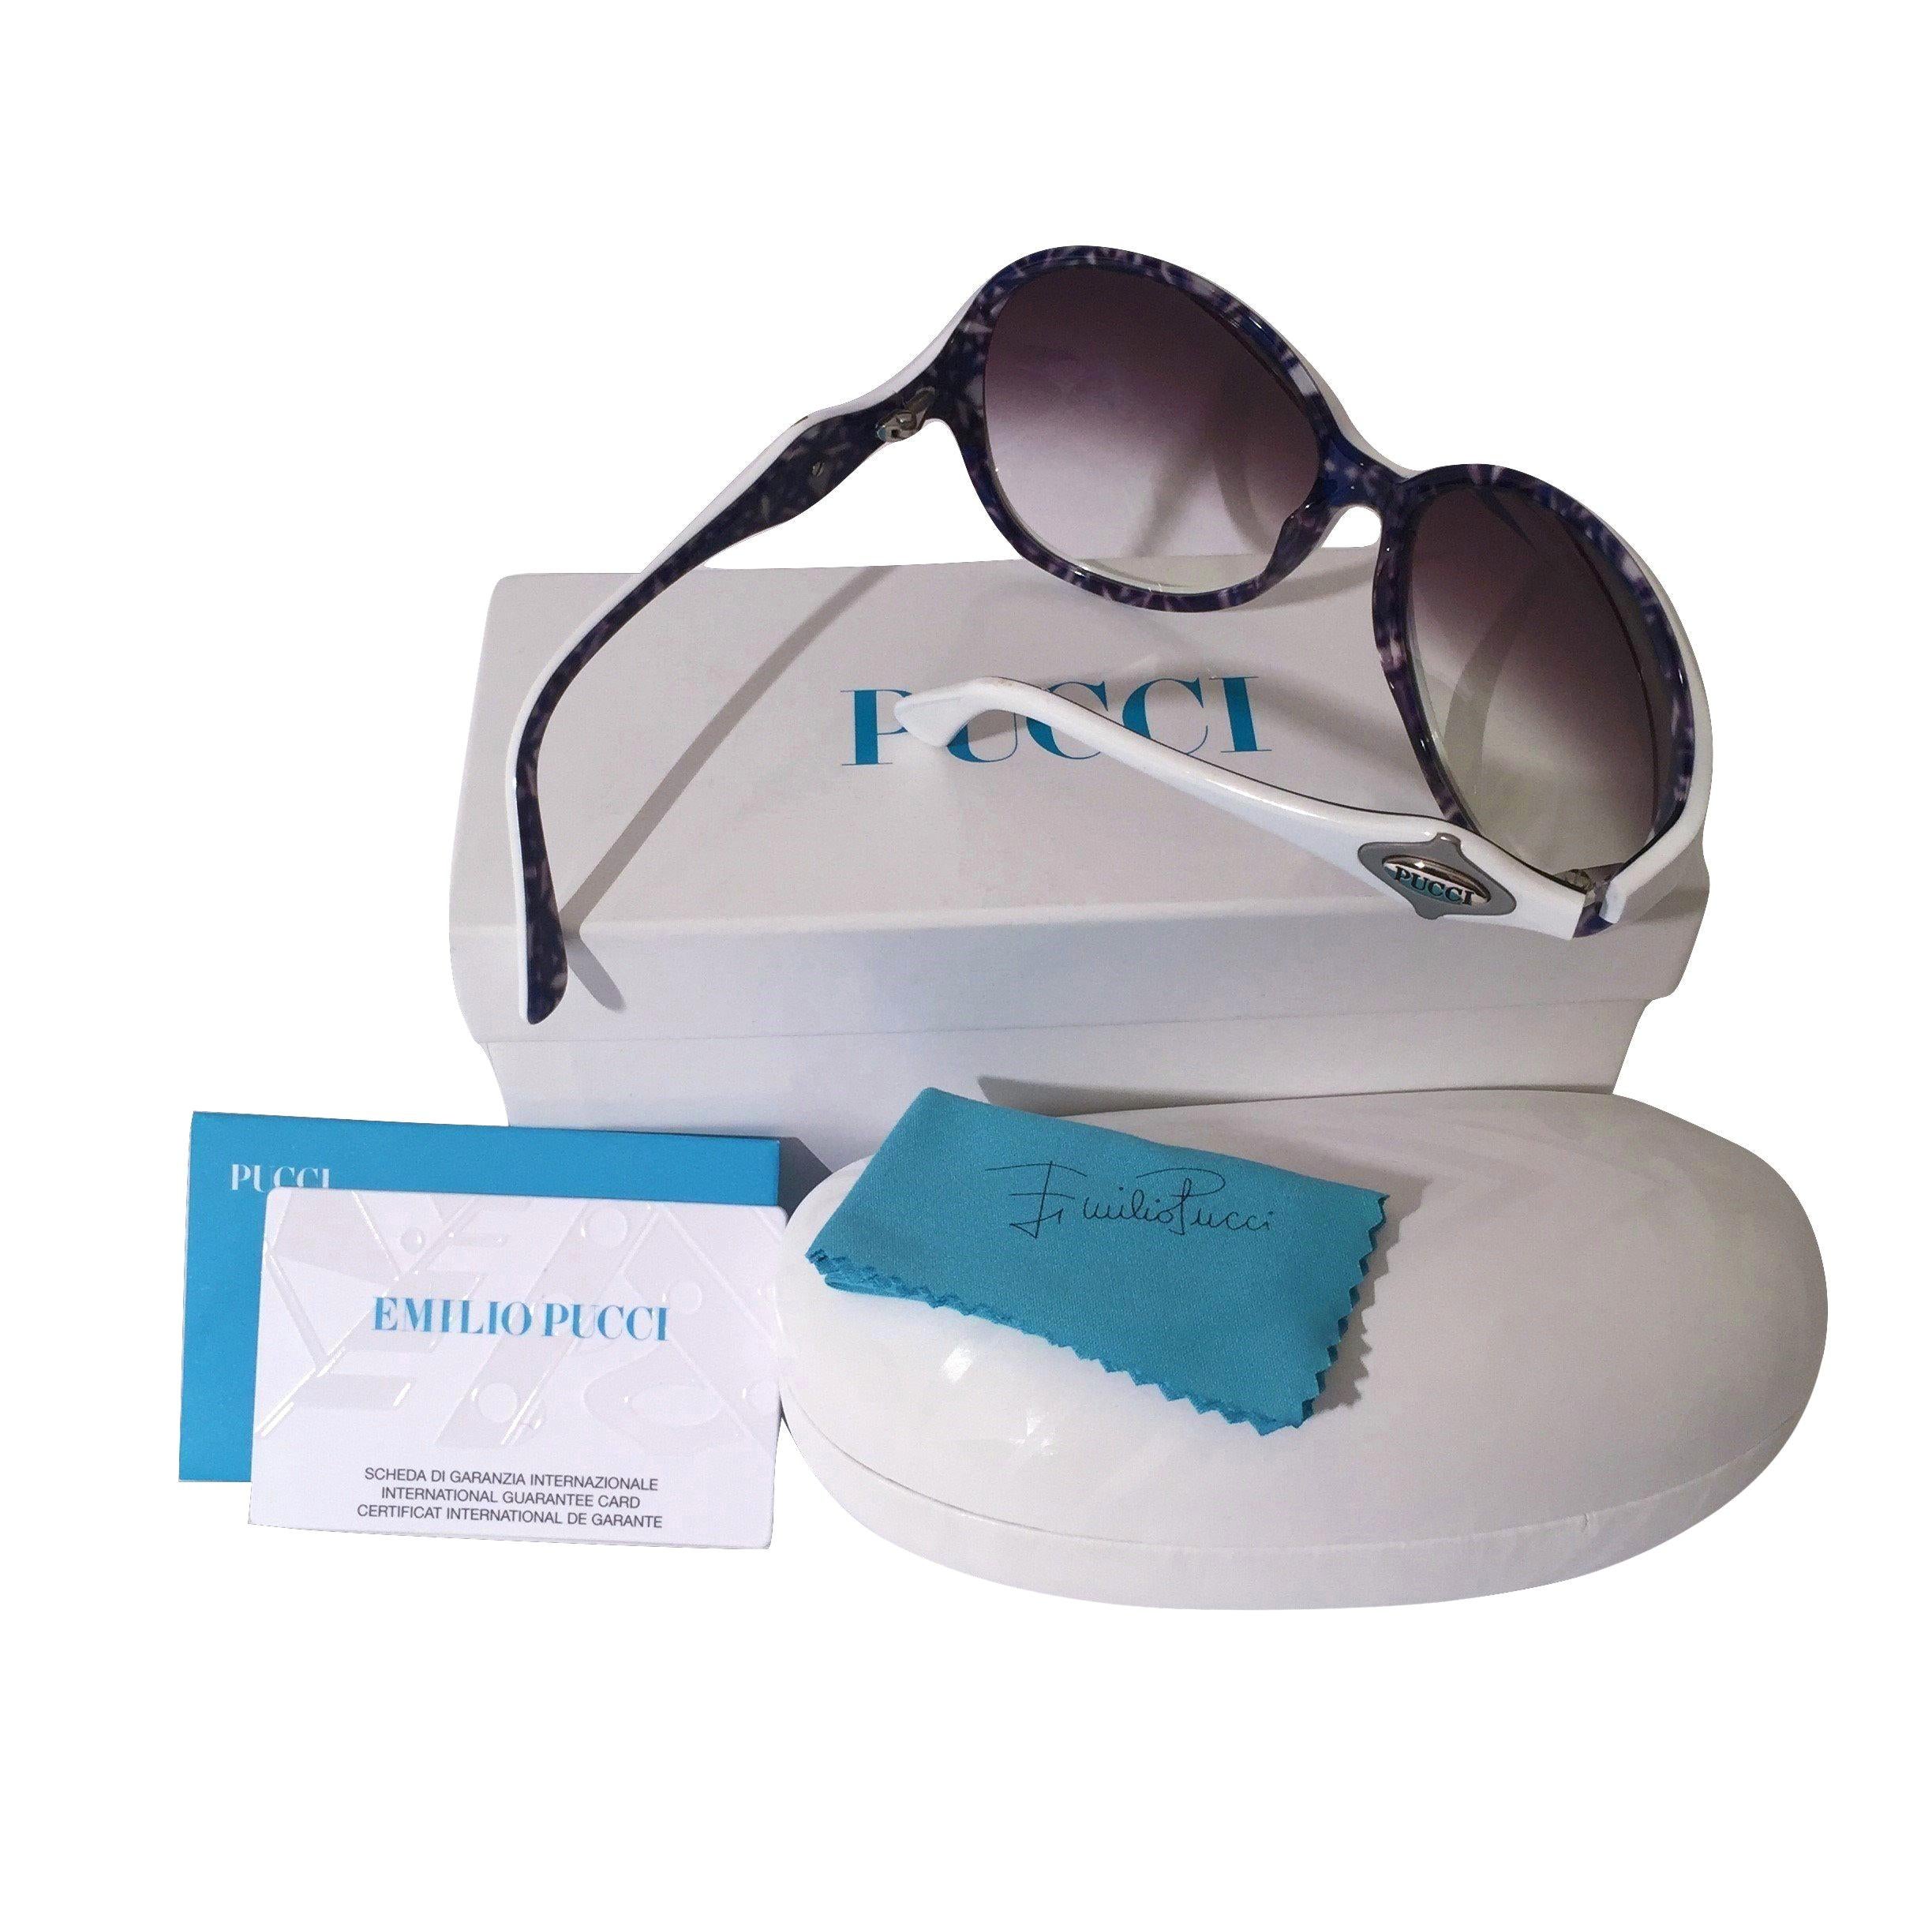 New Emilio Pucci White Logo Sunglasses  With Case & Box